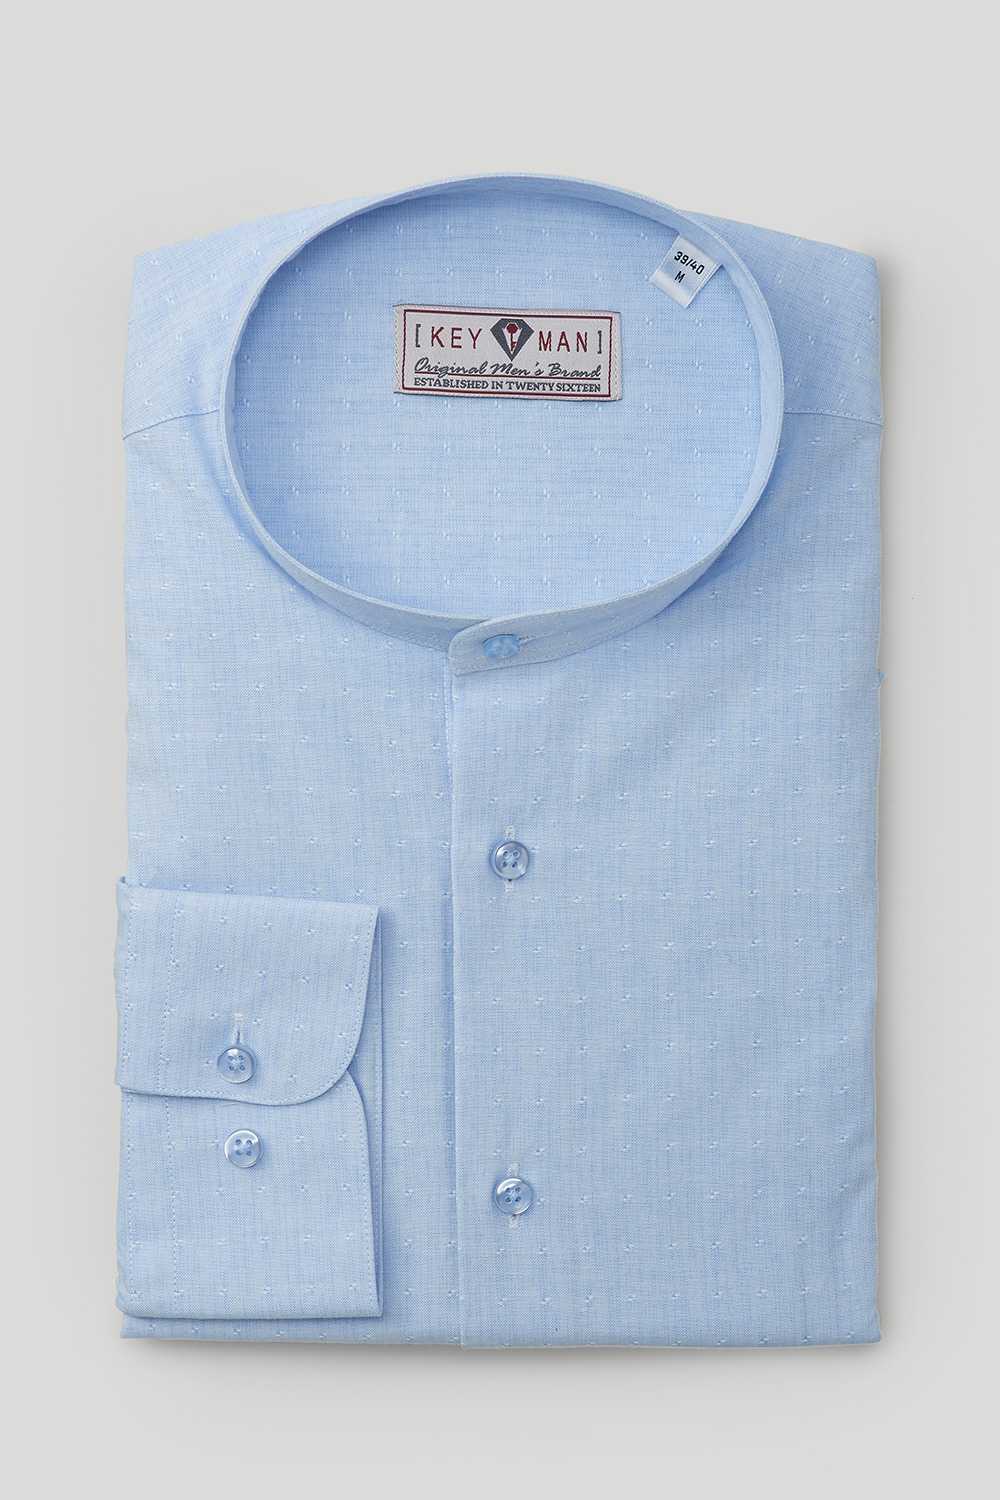 Рубашка мужская светло-голубая в мелкие фактурные квадраты, воротник стойка